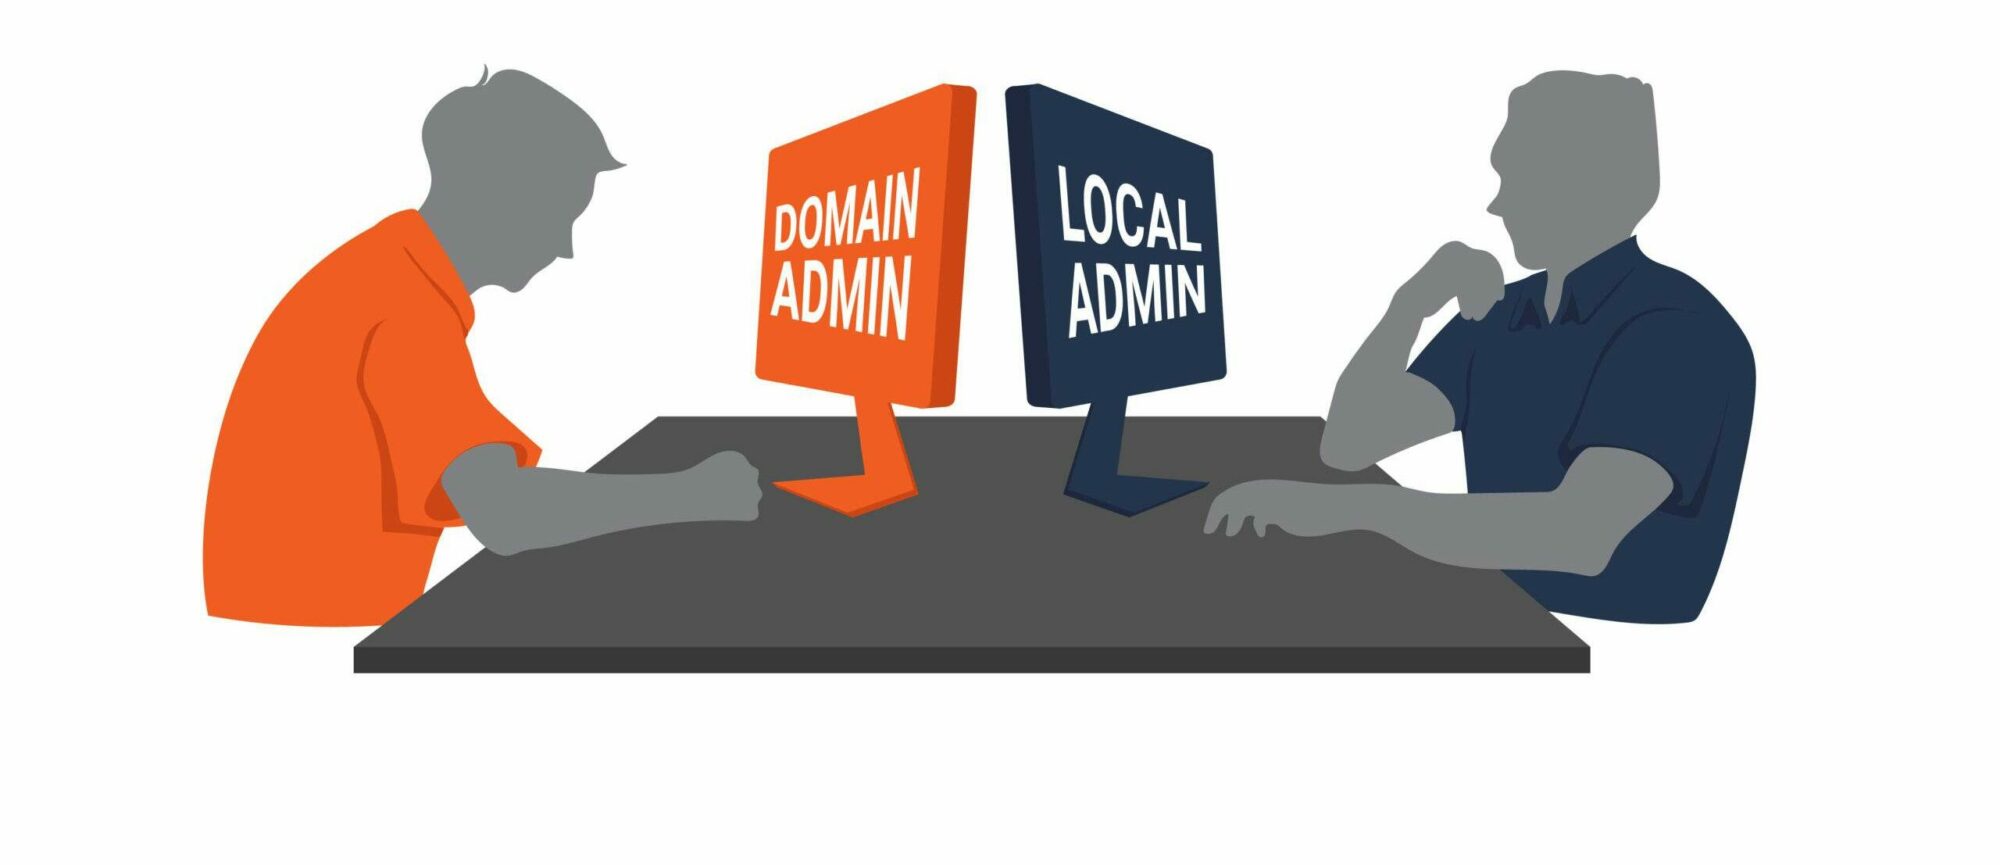 Local Admin vs Domain Admin graphic